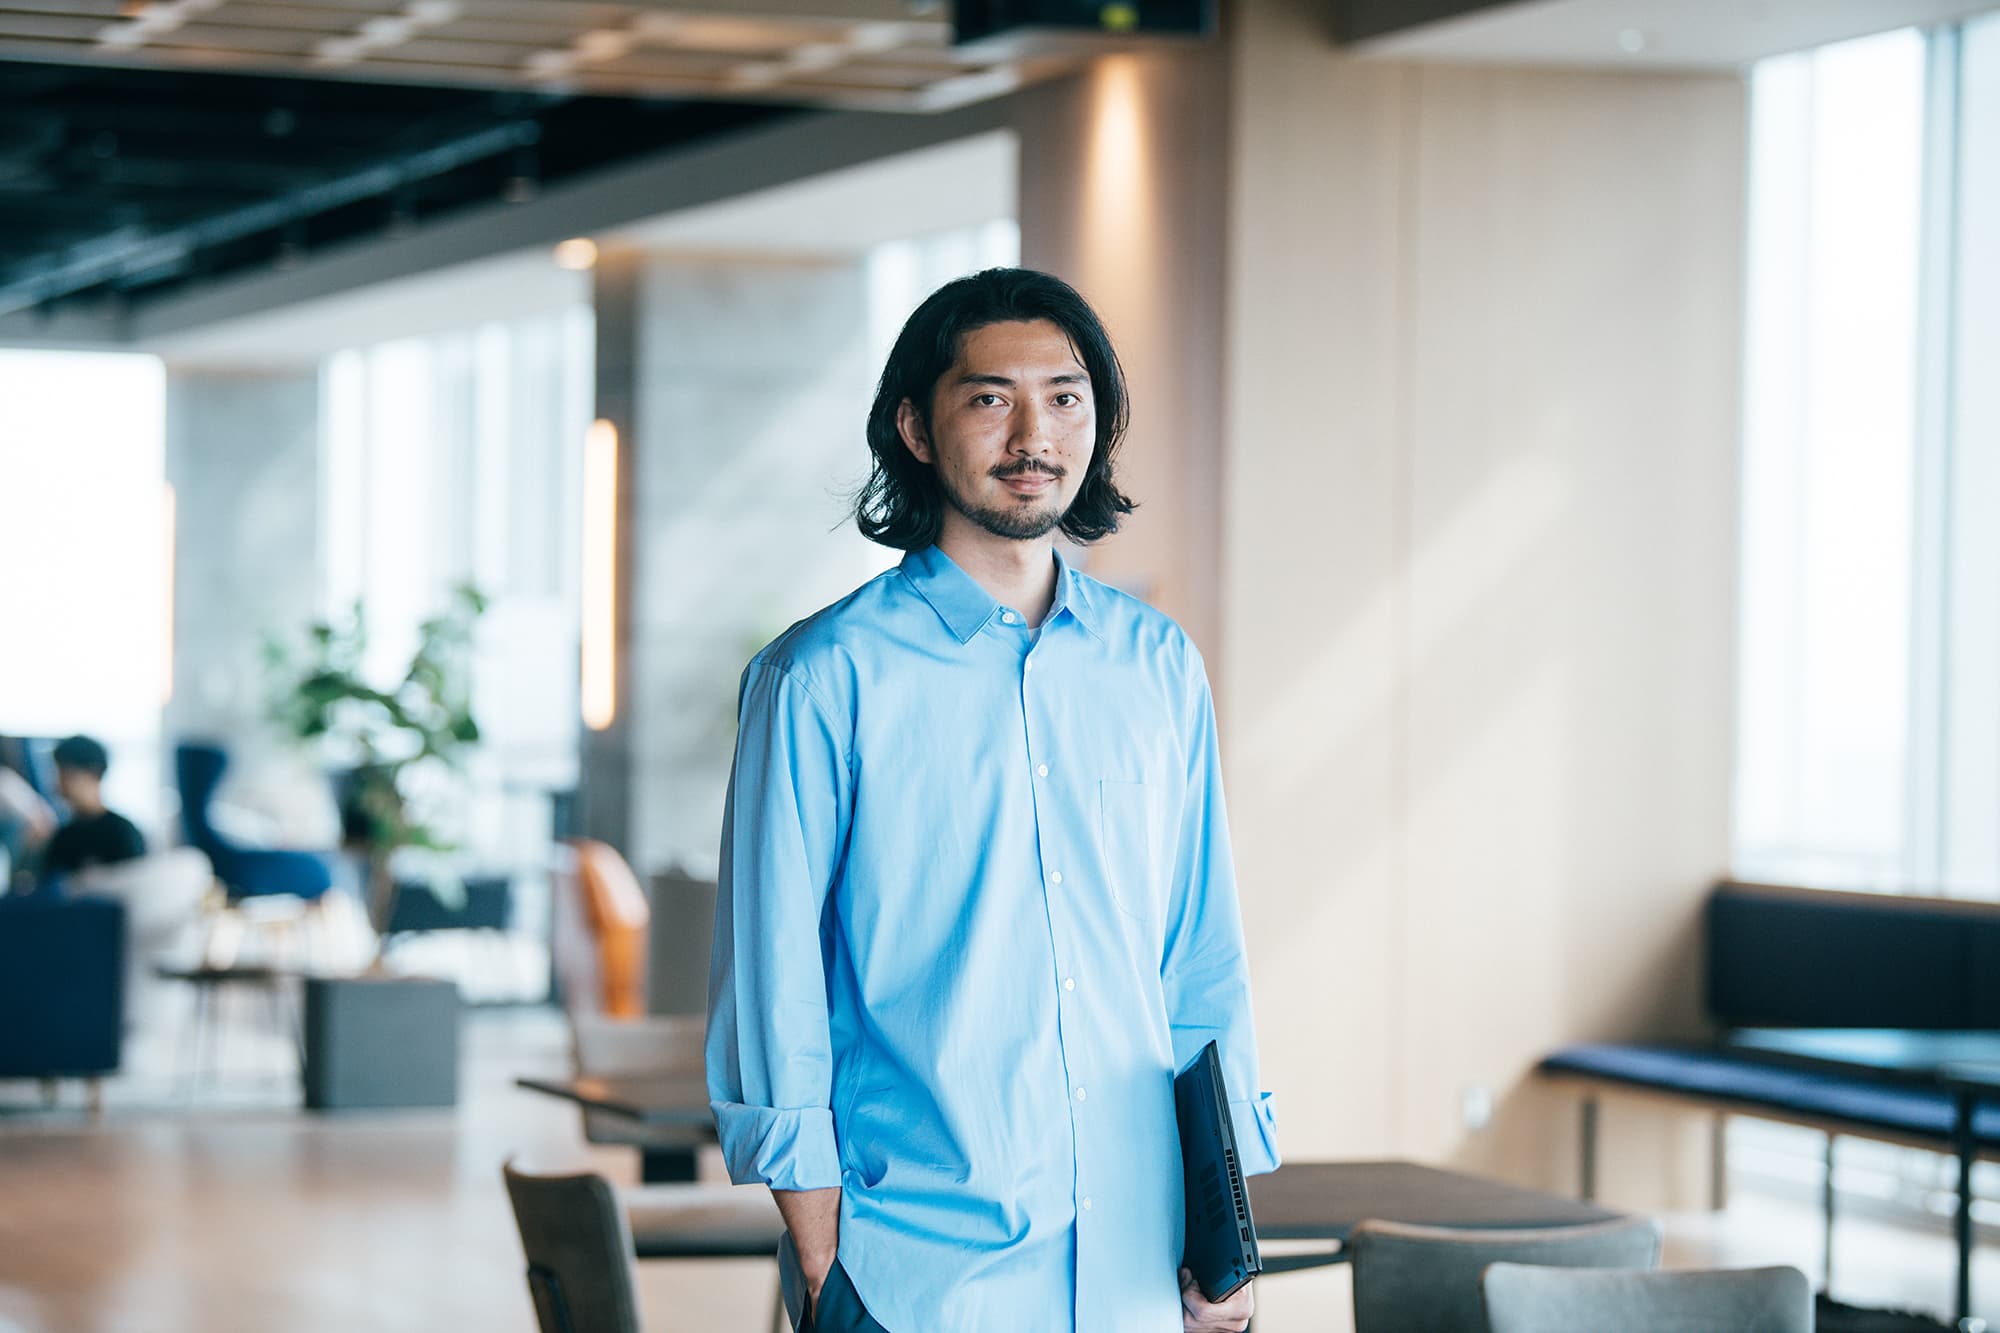 リクルートでデザインディレクターを務める小島清樹が、オフィスでPCを片手にキャリアについて話す様子